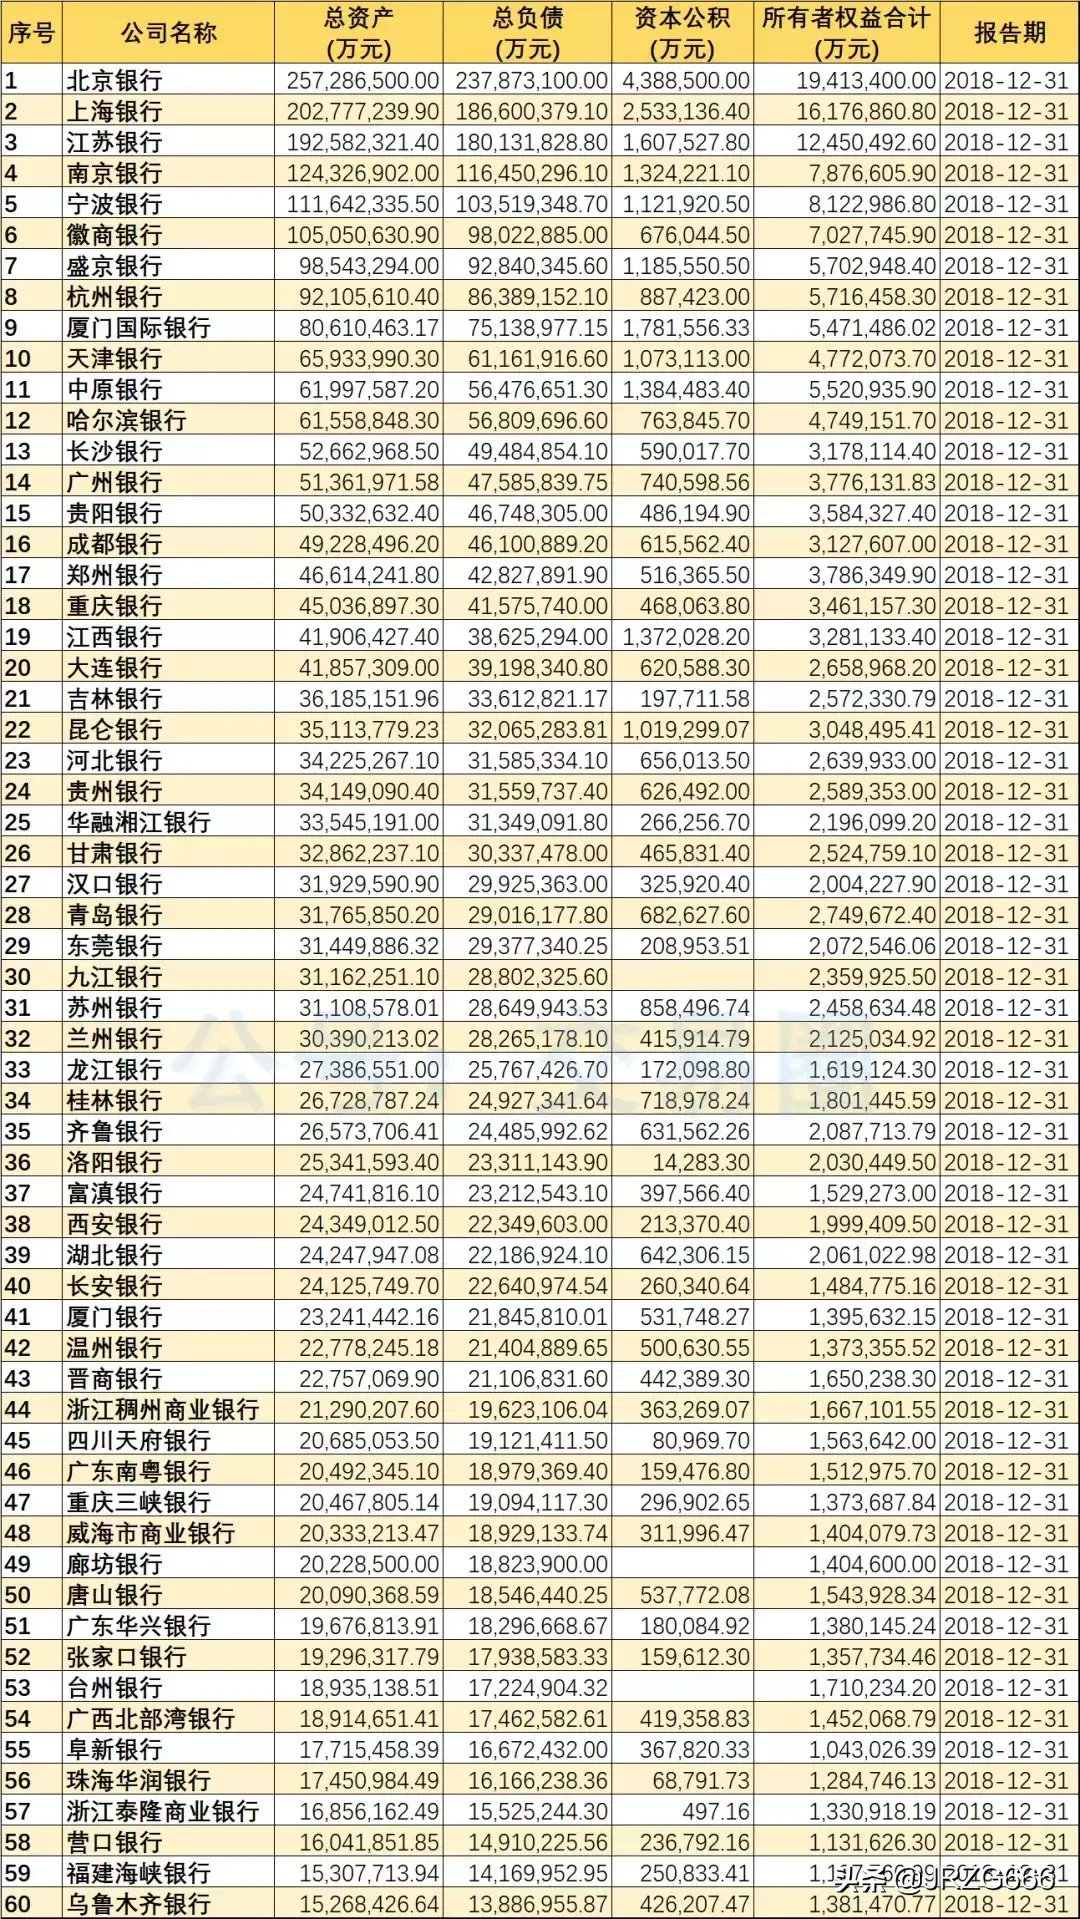 2018年488家银行资产规模排名 | 附城农商行分类排名